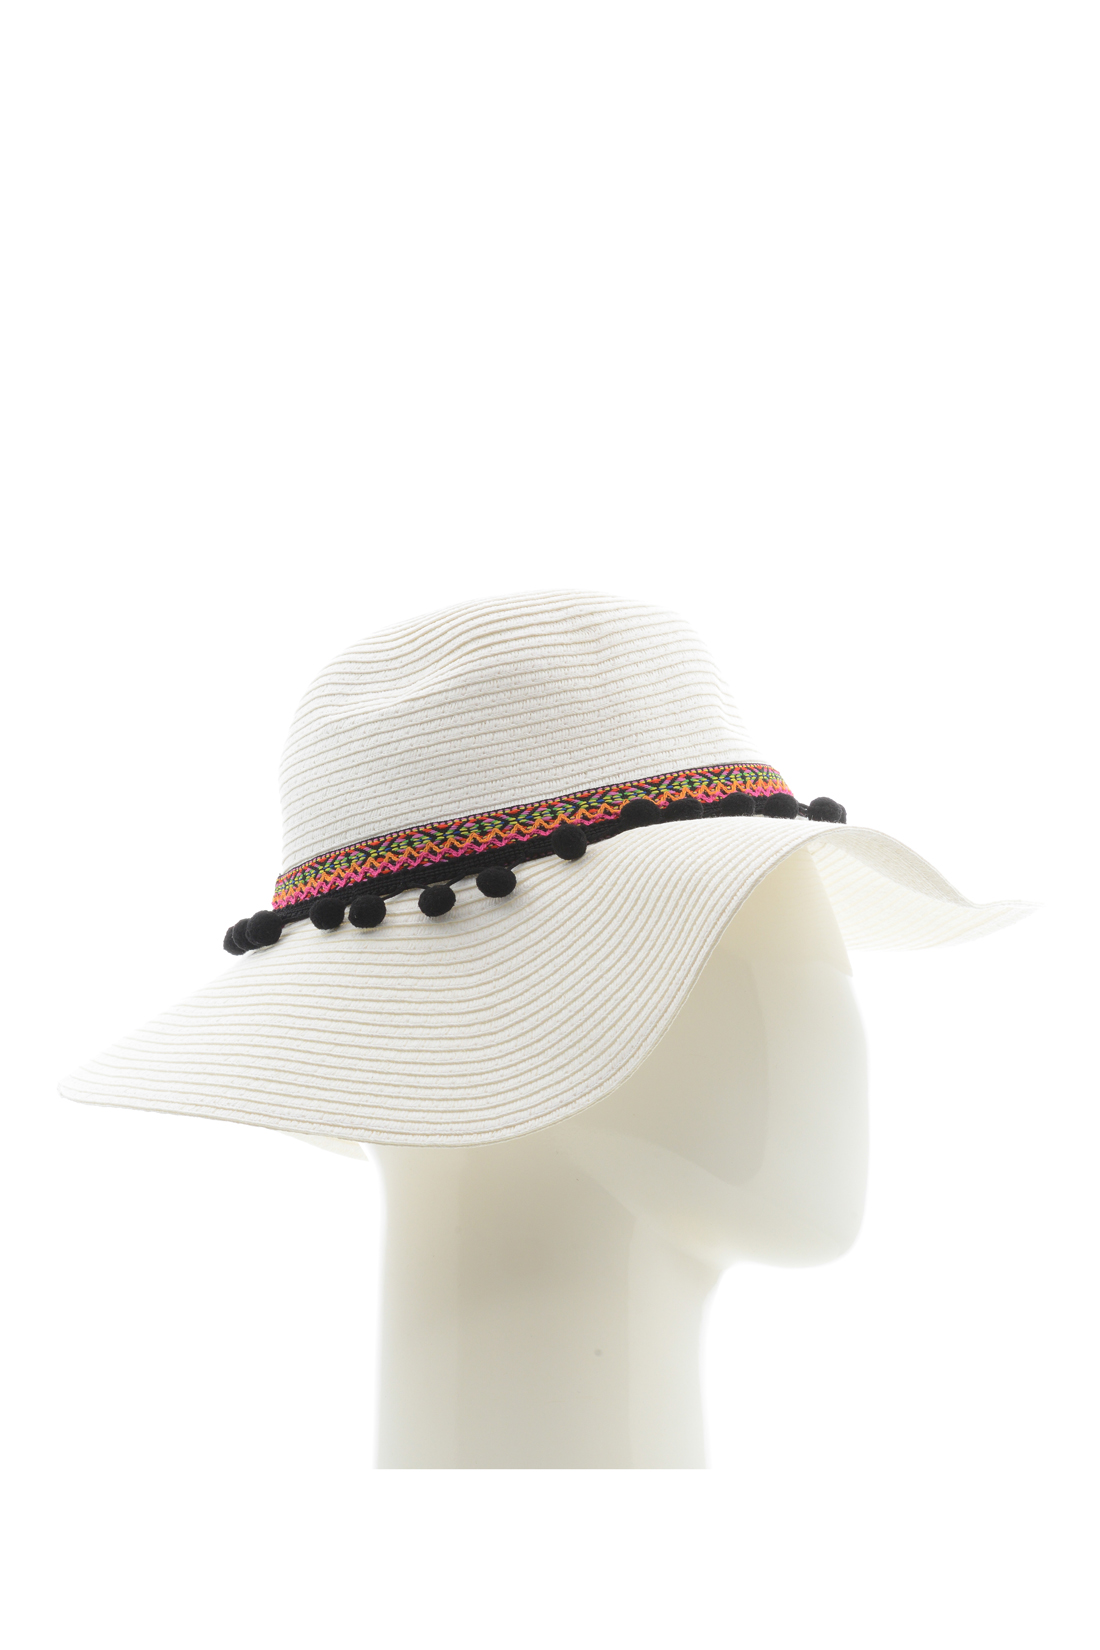 Шляпа с каймой (арт. baon B348001), размер Б/р 56, цвет белый Шляпа с каймой (арт. baon B348001) - фото 2